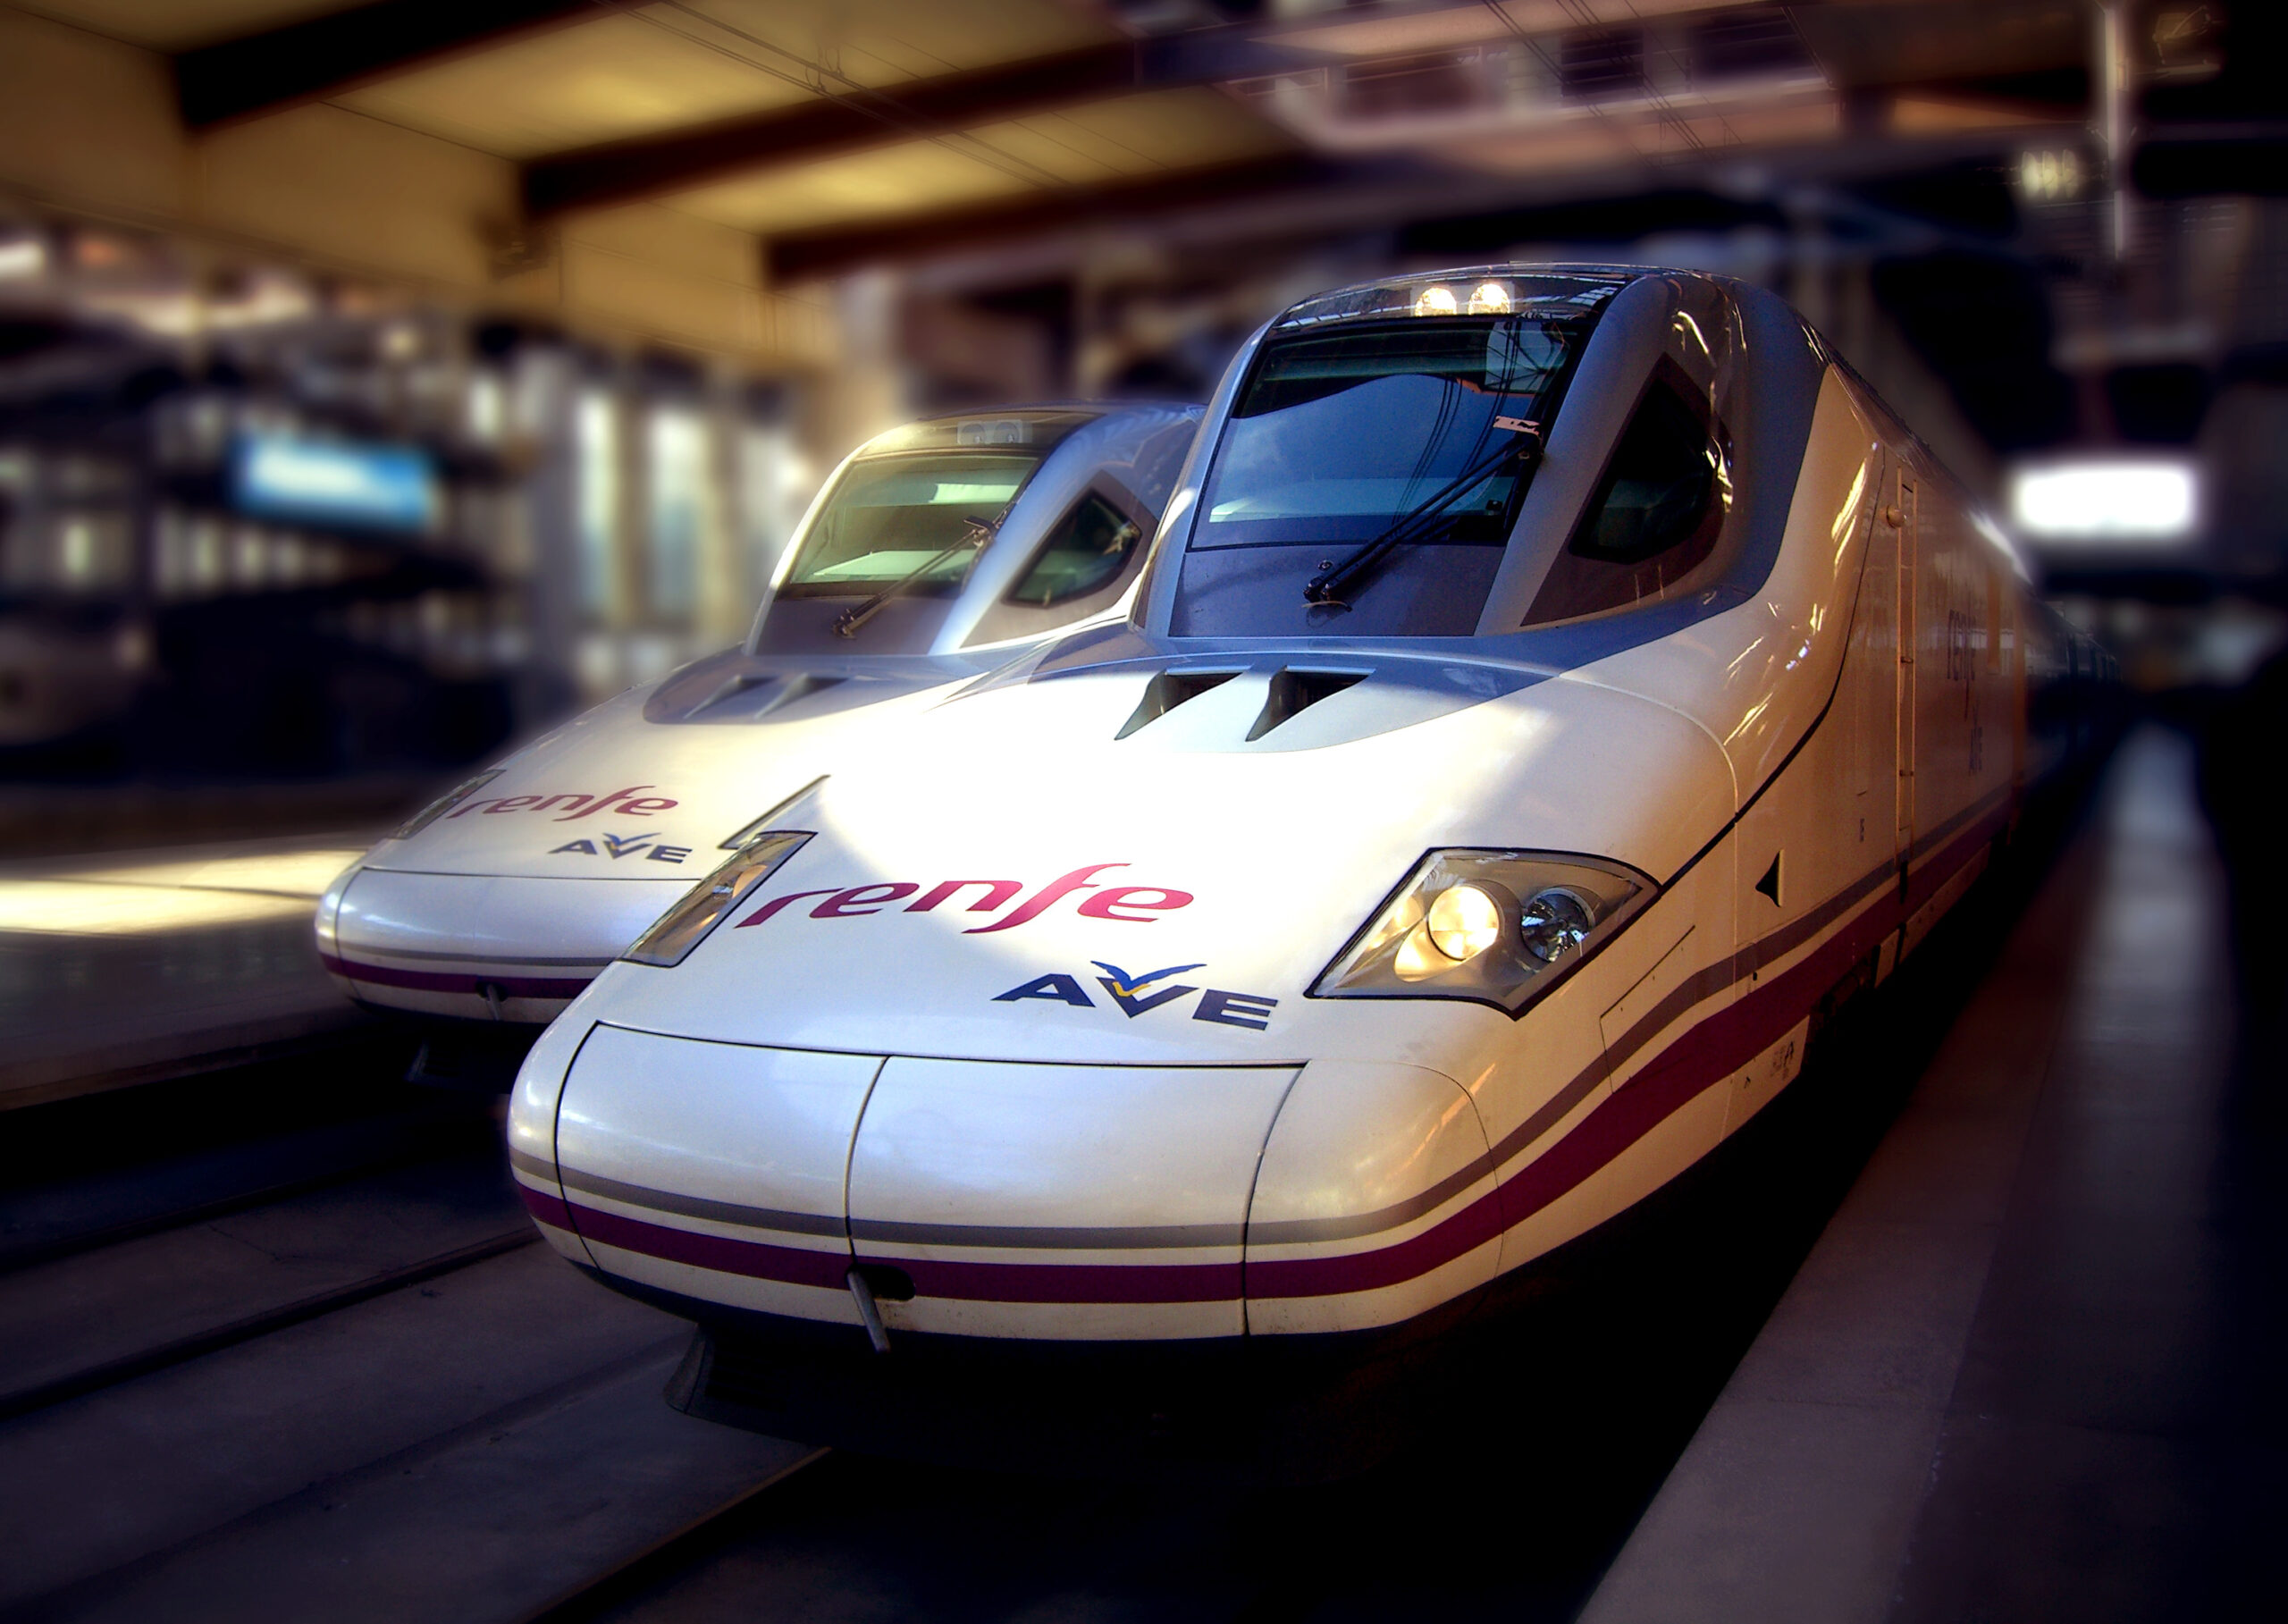 Talgo 350 Train Fastest Train in The World